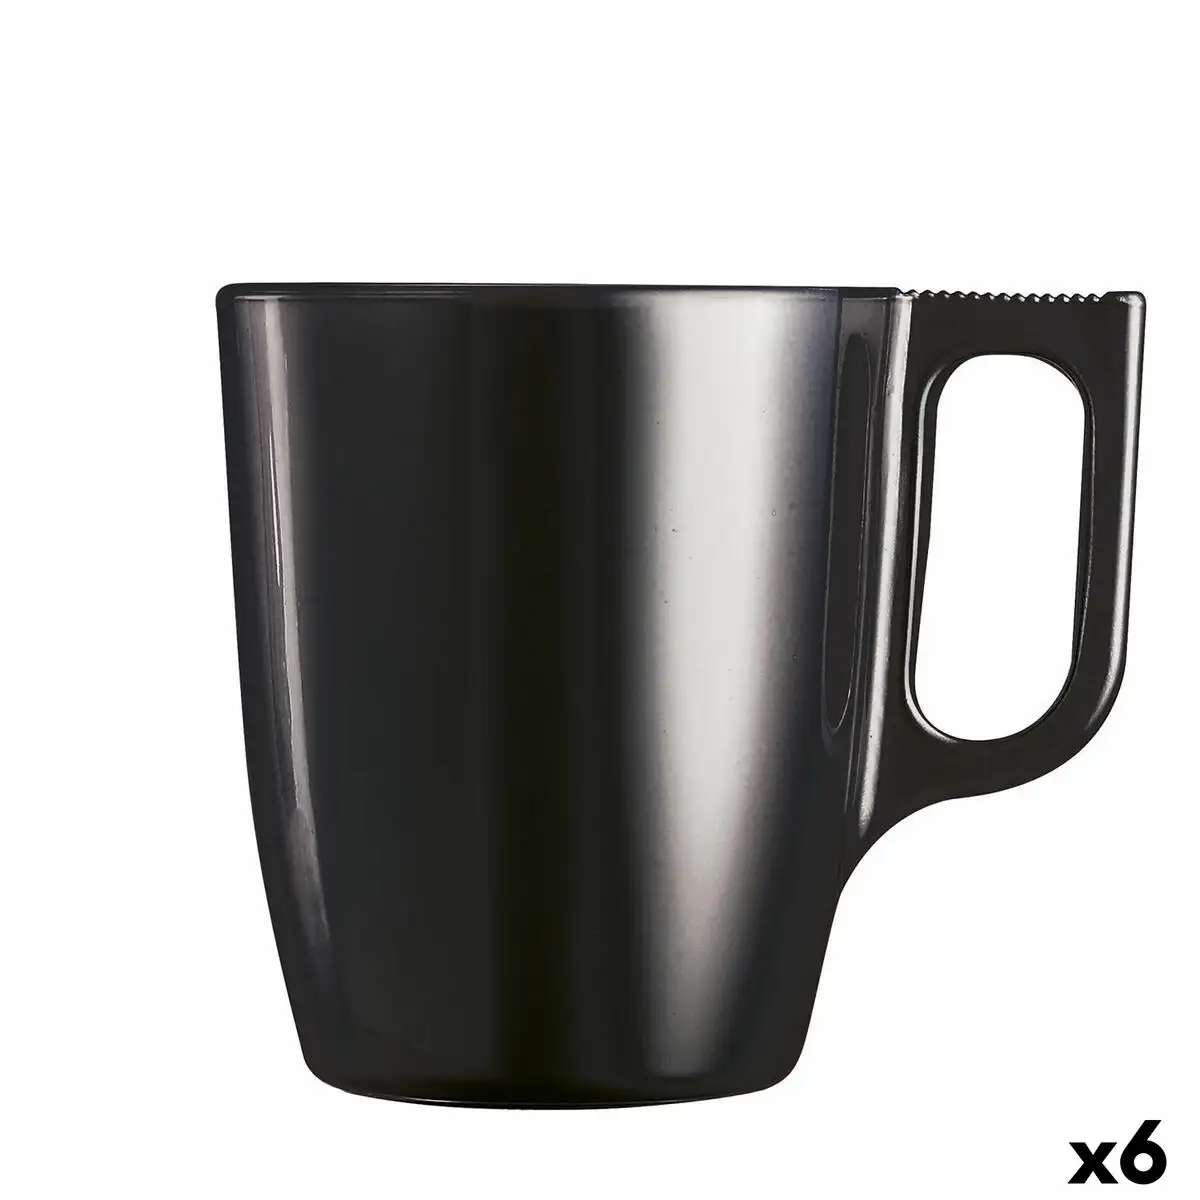 Tasse mug luminarc flashy noir 250 ml verre 6 unites _9715. DIAYTAR SENEGAL - Votre Destination pour un Shopping Réfléchi. Découvrez notre gamme variée et choisissez des produits qui correspondent à vos valeurs et à votre style de vie.